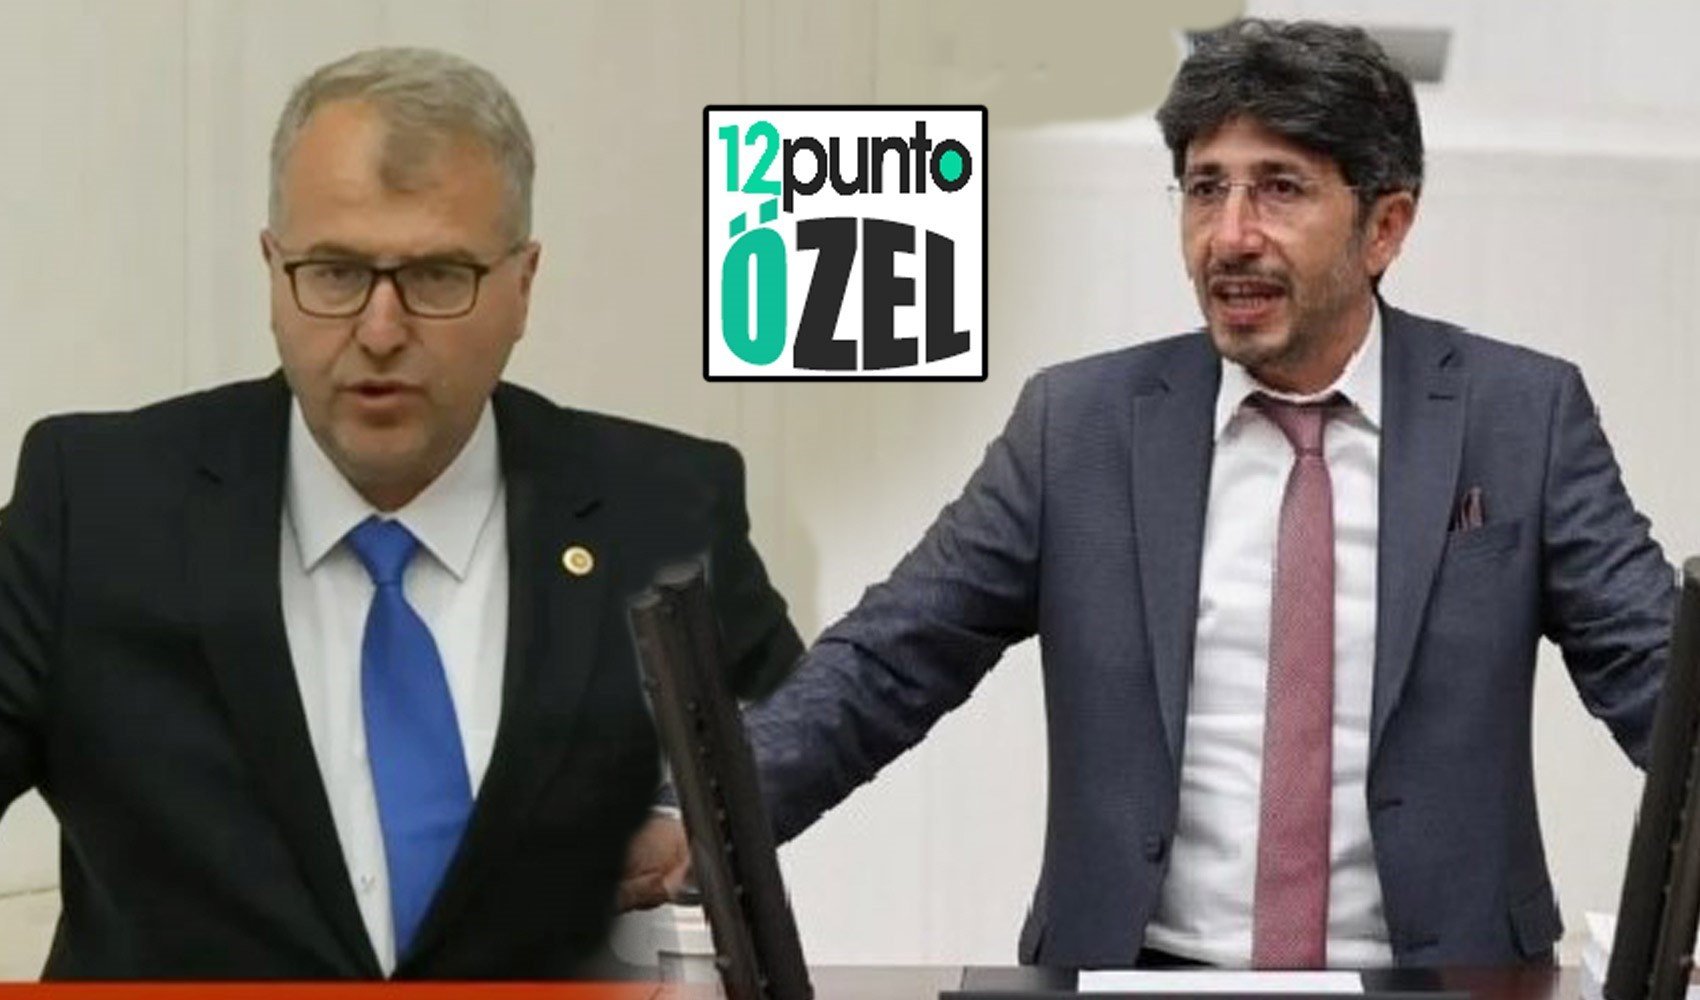 DEM Parti Milletvekili Bozan ve AKP Milletvekili Eldemir 12punto’ya konuştu: Meclis kavgasını taraflarına sorduk